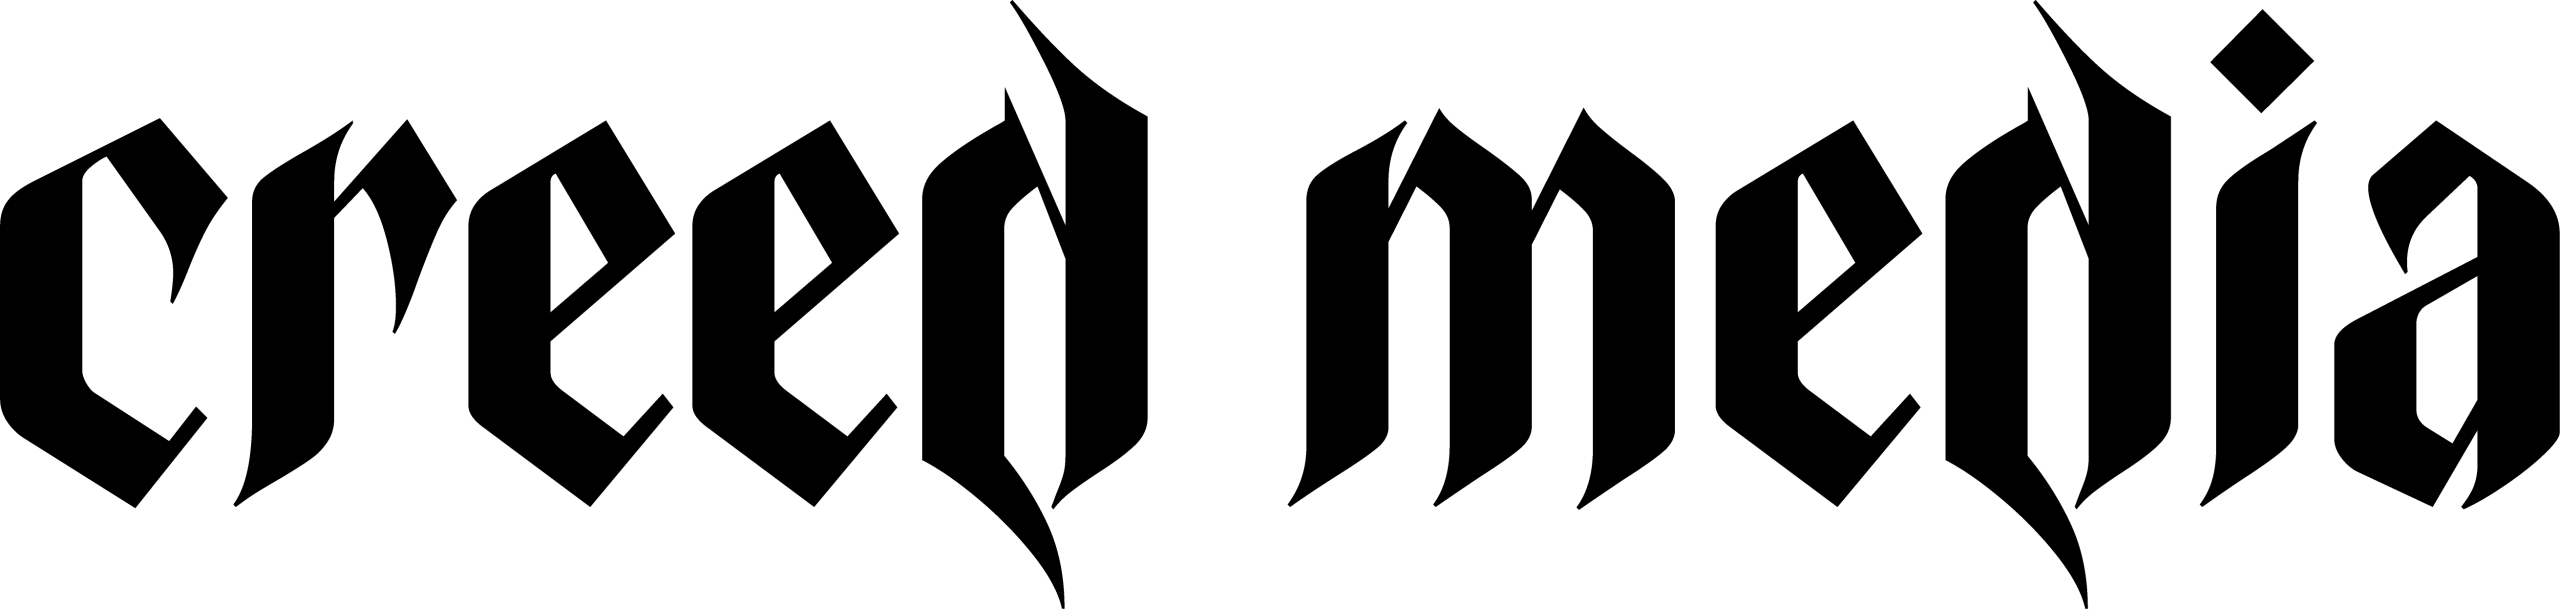 creed logga logo